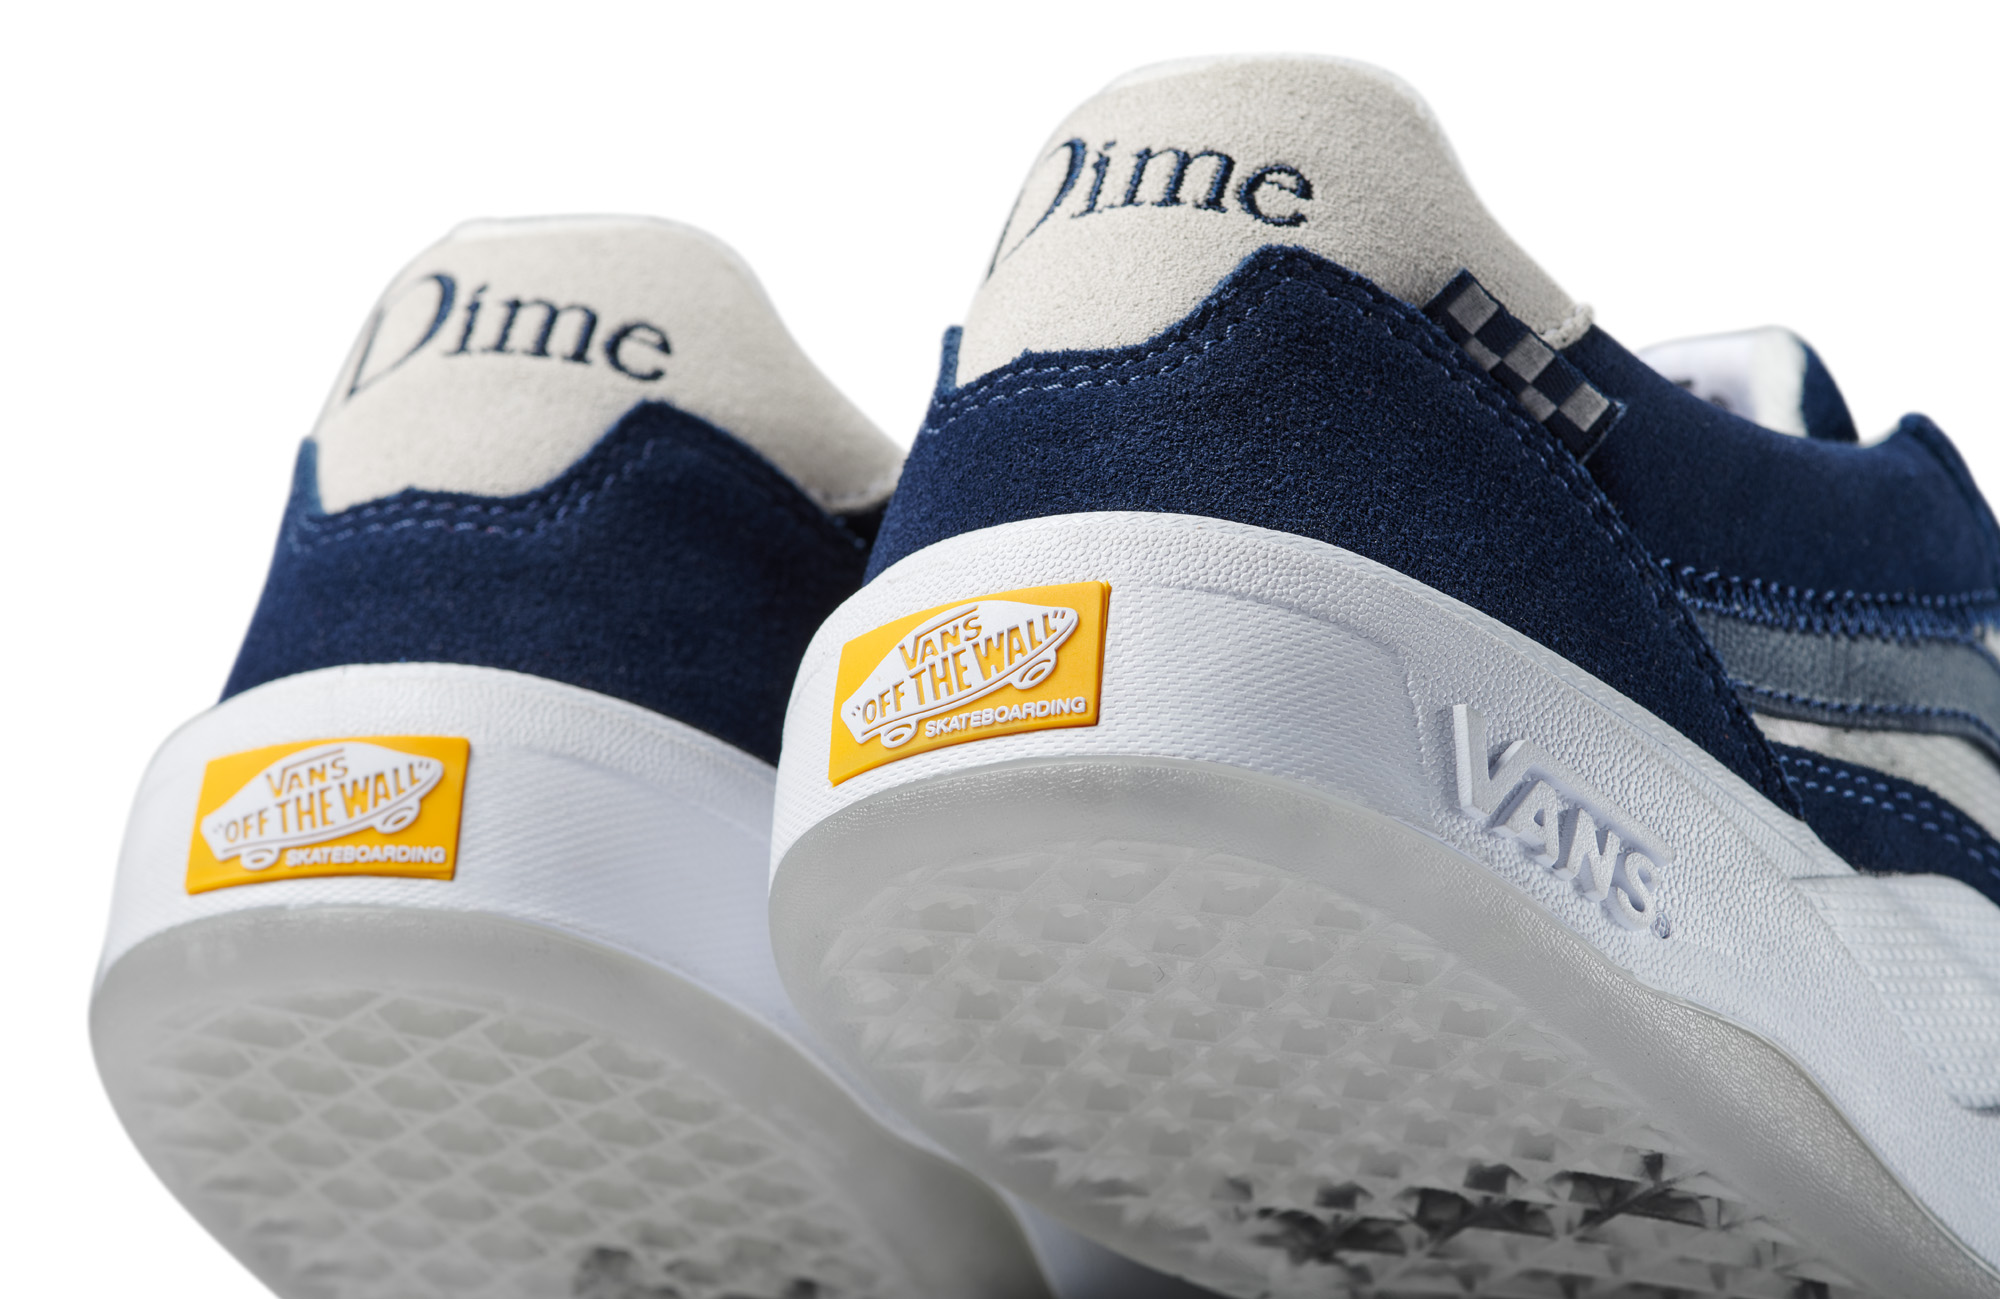 Novo modelo da VANS em parceria com a DIME – Wayvee já disponível – Surge  Skateboard